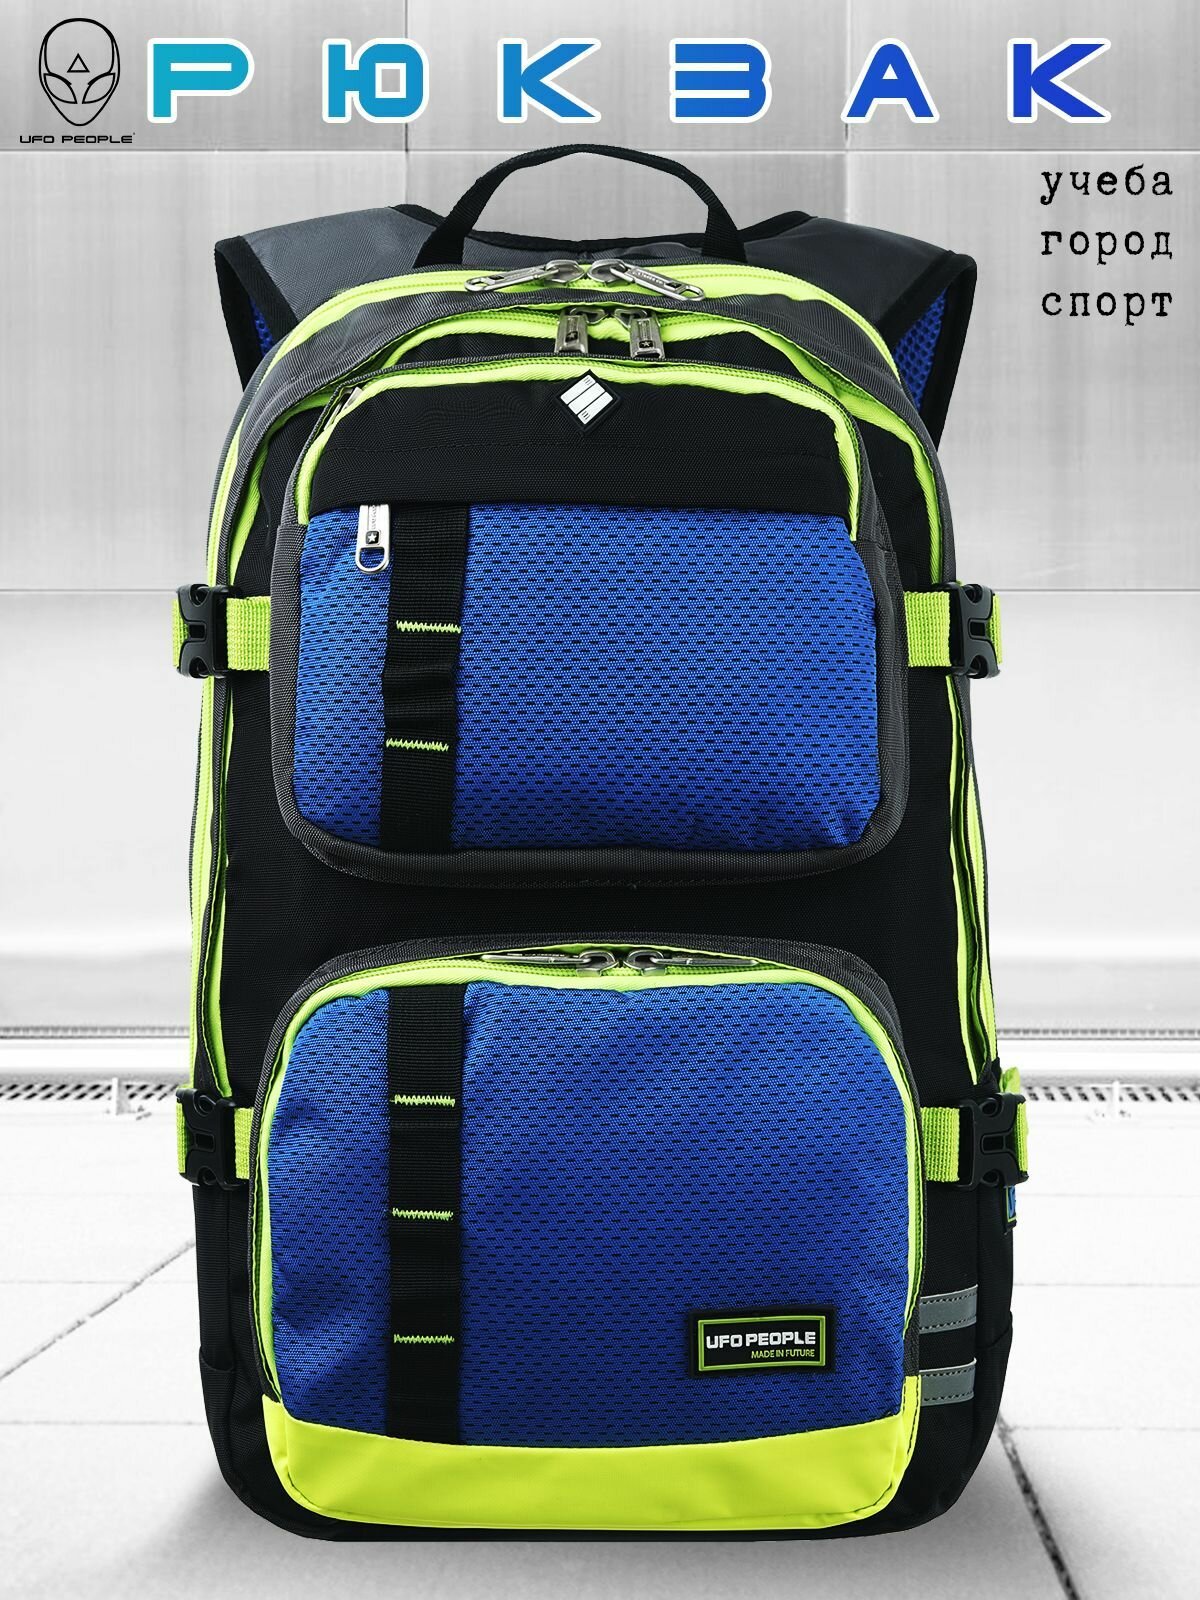 Рюкзак школьный для мальчика UFO PEOPLE. Текстильный рюкзак для мальчиков, спортивный с эргономической спинкой , ранец